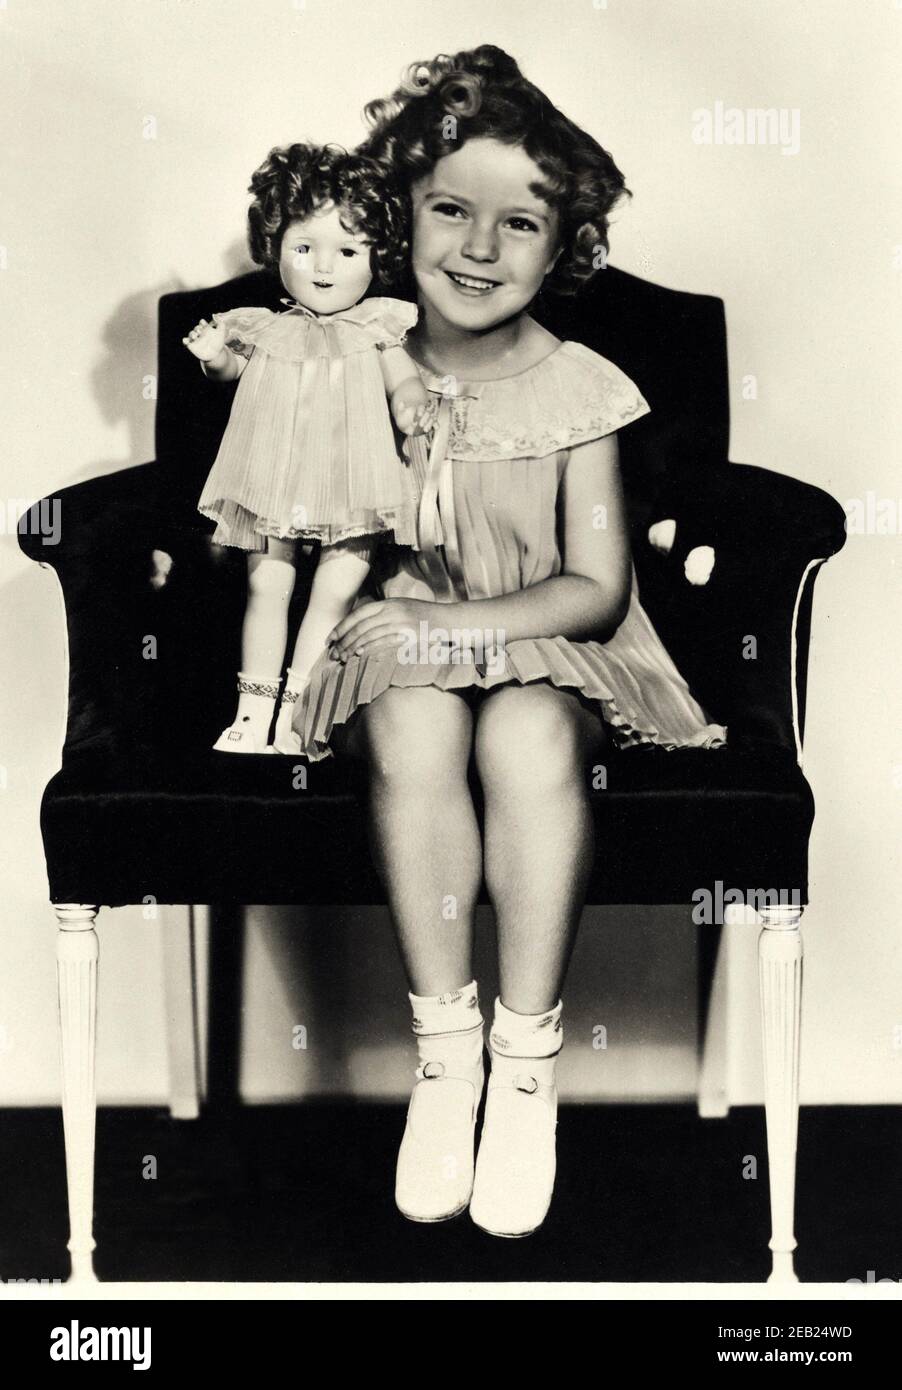 1935  ca. , USA  : The child actress SHIRLEY TEMPLE ( 1928 -  2014 ) with a look-a-like doll of himself , Fox movie pubblicity still   - MOVIE - FILM - CINEMA - portrait - ritratto  - boccoli - riccioli - curls   - bambino prodigio  -  bambola - bambole - giocattolo  - giocattoli -  celebrity celebrities actors actor actress personality personalities with dolls  - toy - toys  - celebrità attori attrici personalità con - smile - sorriso  - scarpe alla bebè - shoes - poltrona - pizzo - lace - collar - colletto  ----  Archivio GBB Stock Photo